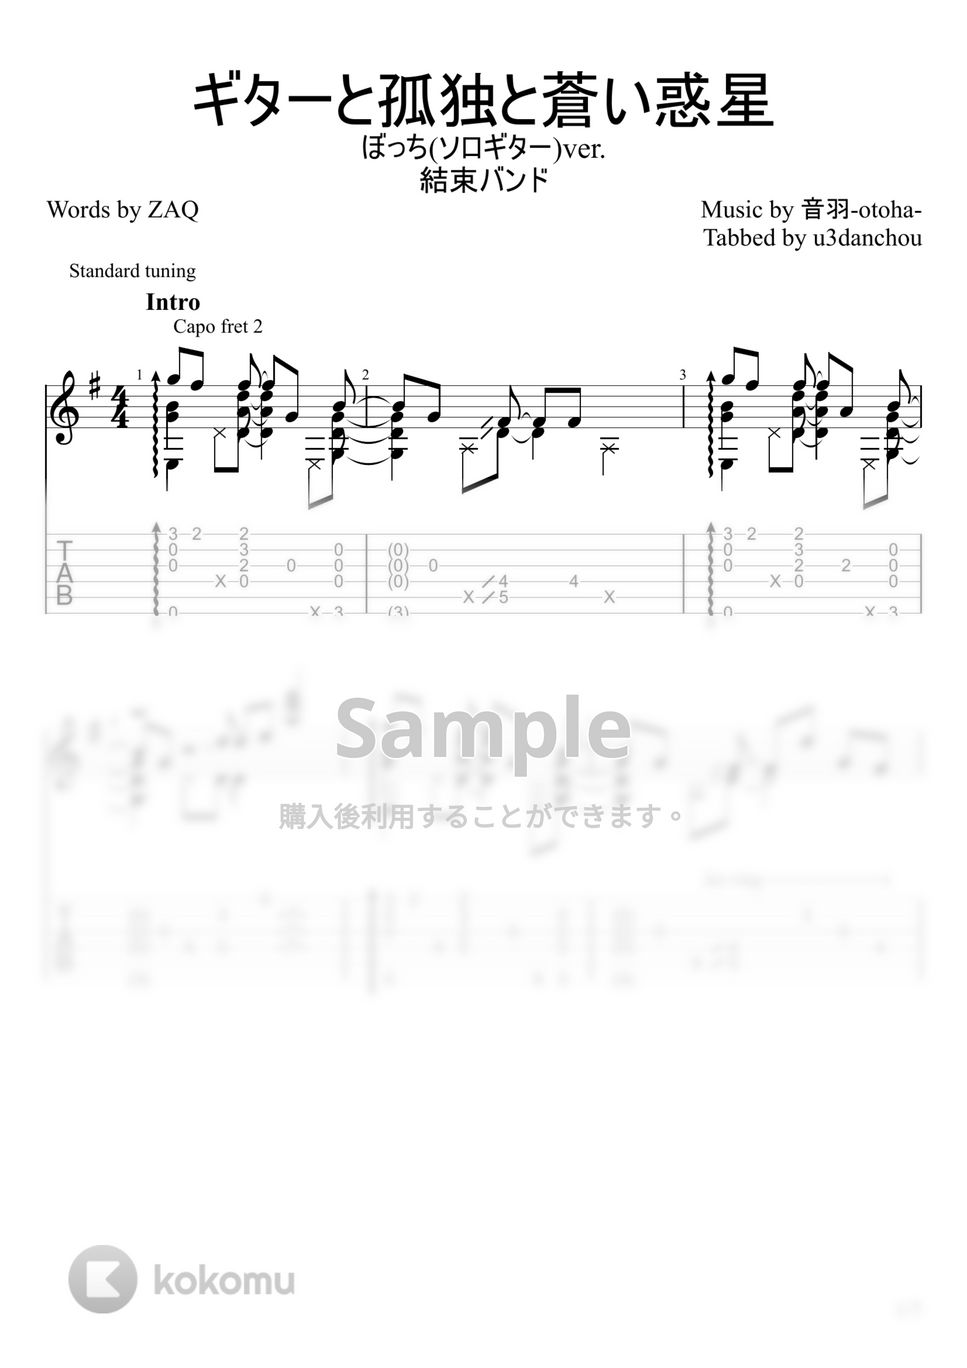 結束バンド - ギターと孤独と蒼い惑星 (ソロギター) by u3danchou